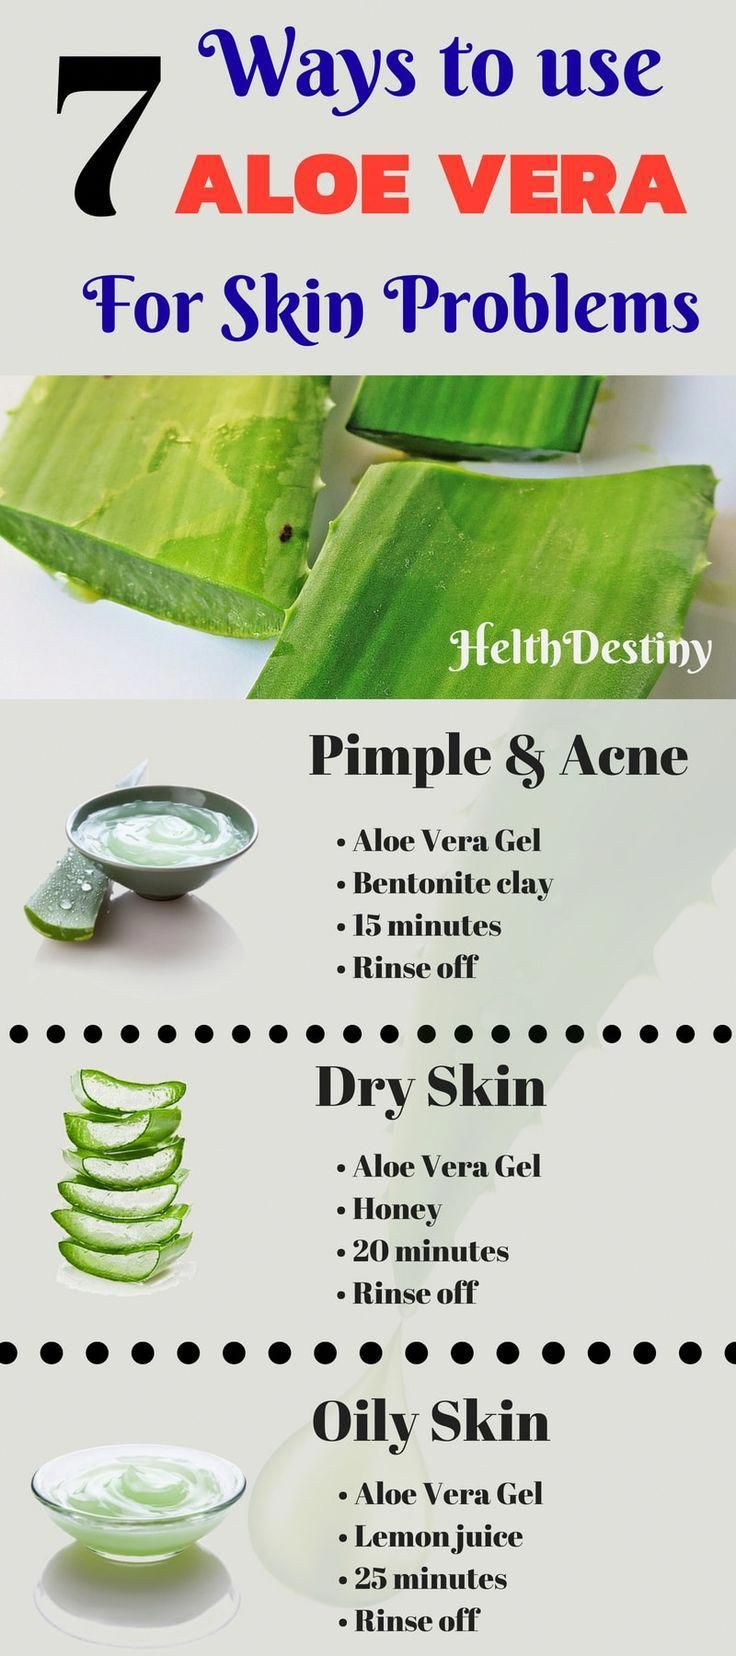 Aloe Vera benefits for skin and how to use it | Top 7 | HelthDestiny -   beauty Hacks aloe vera